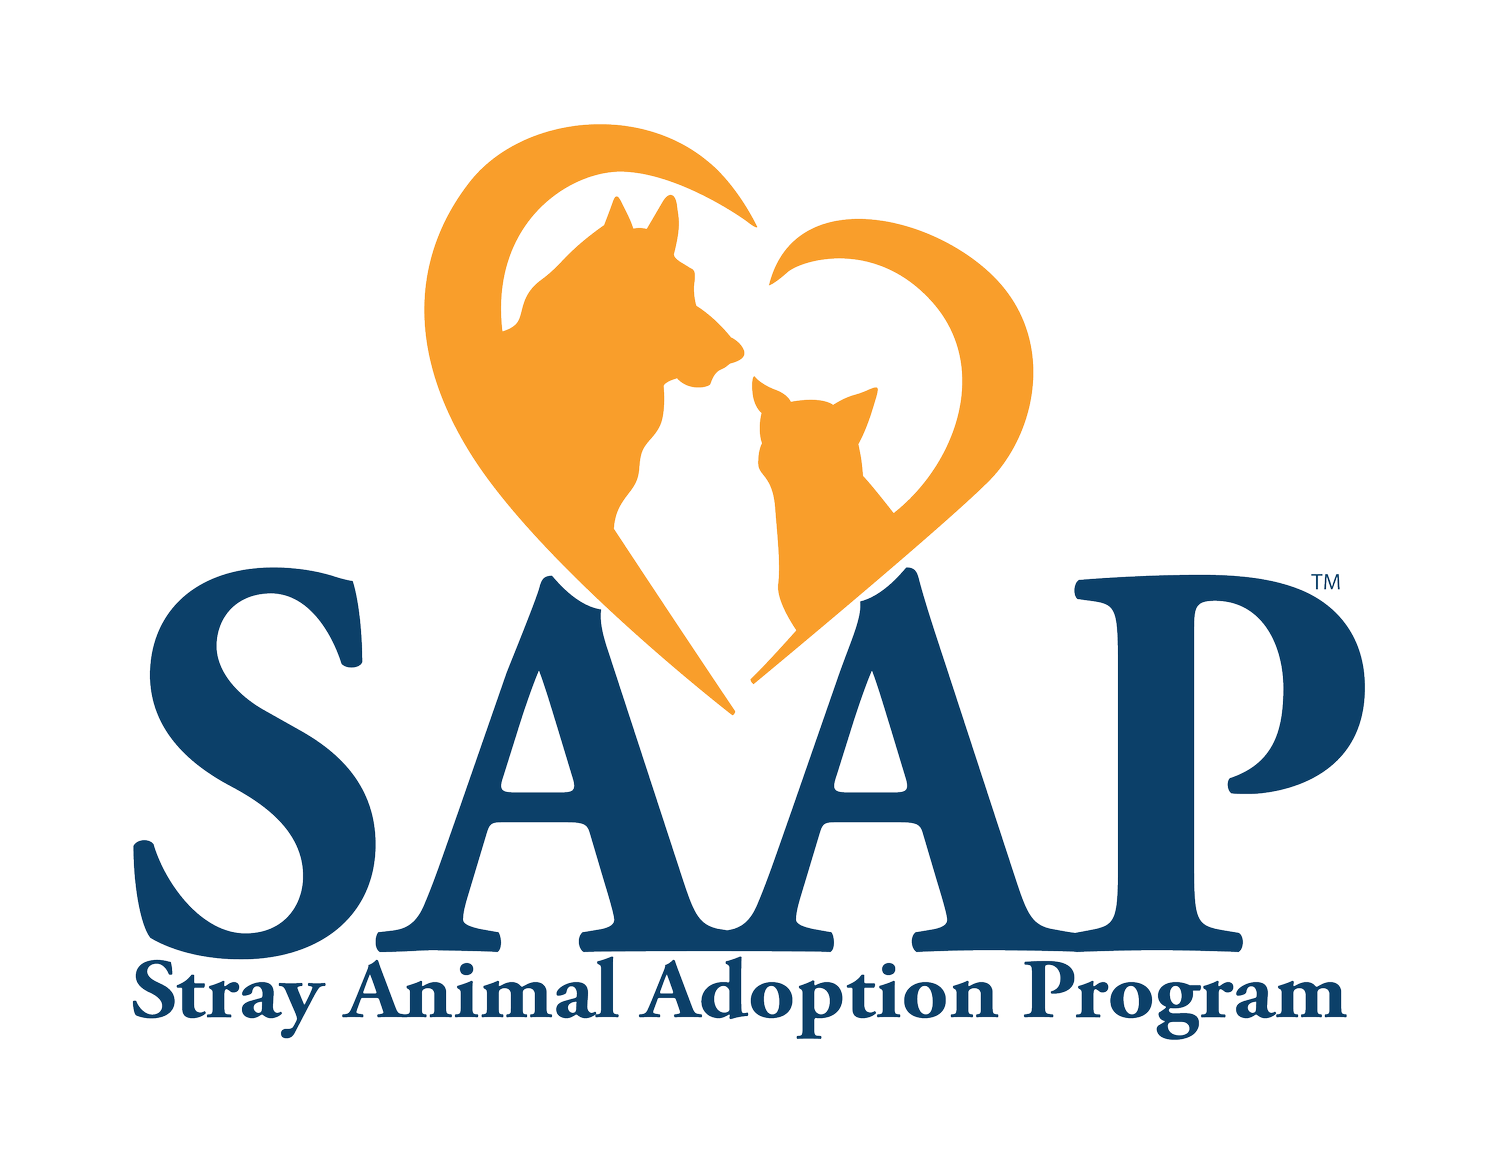 Stray Animal Adoption Program